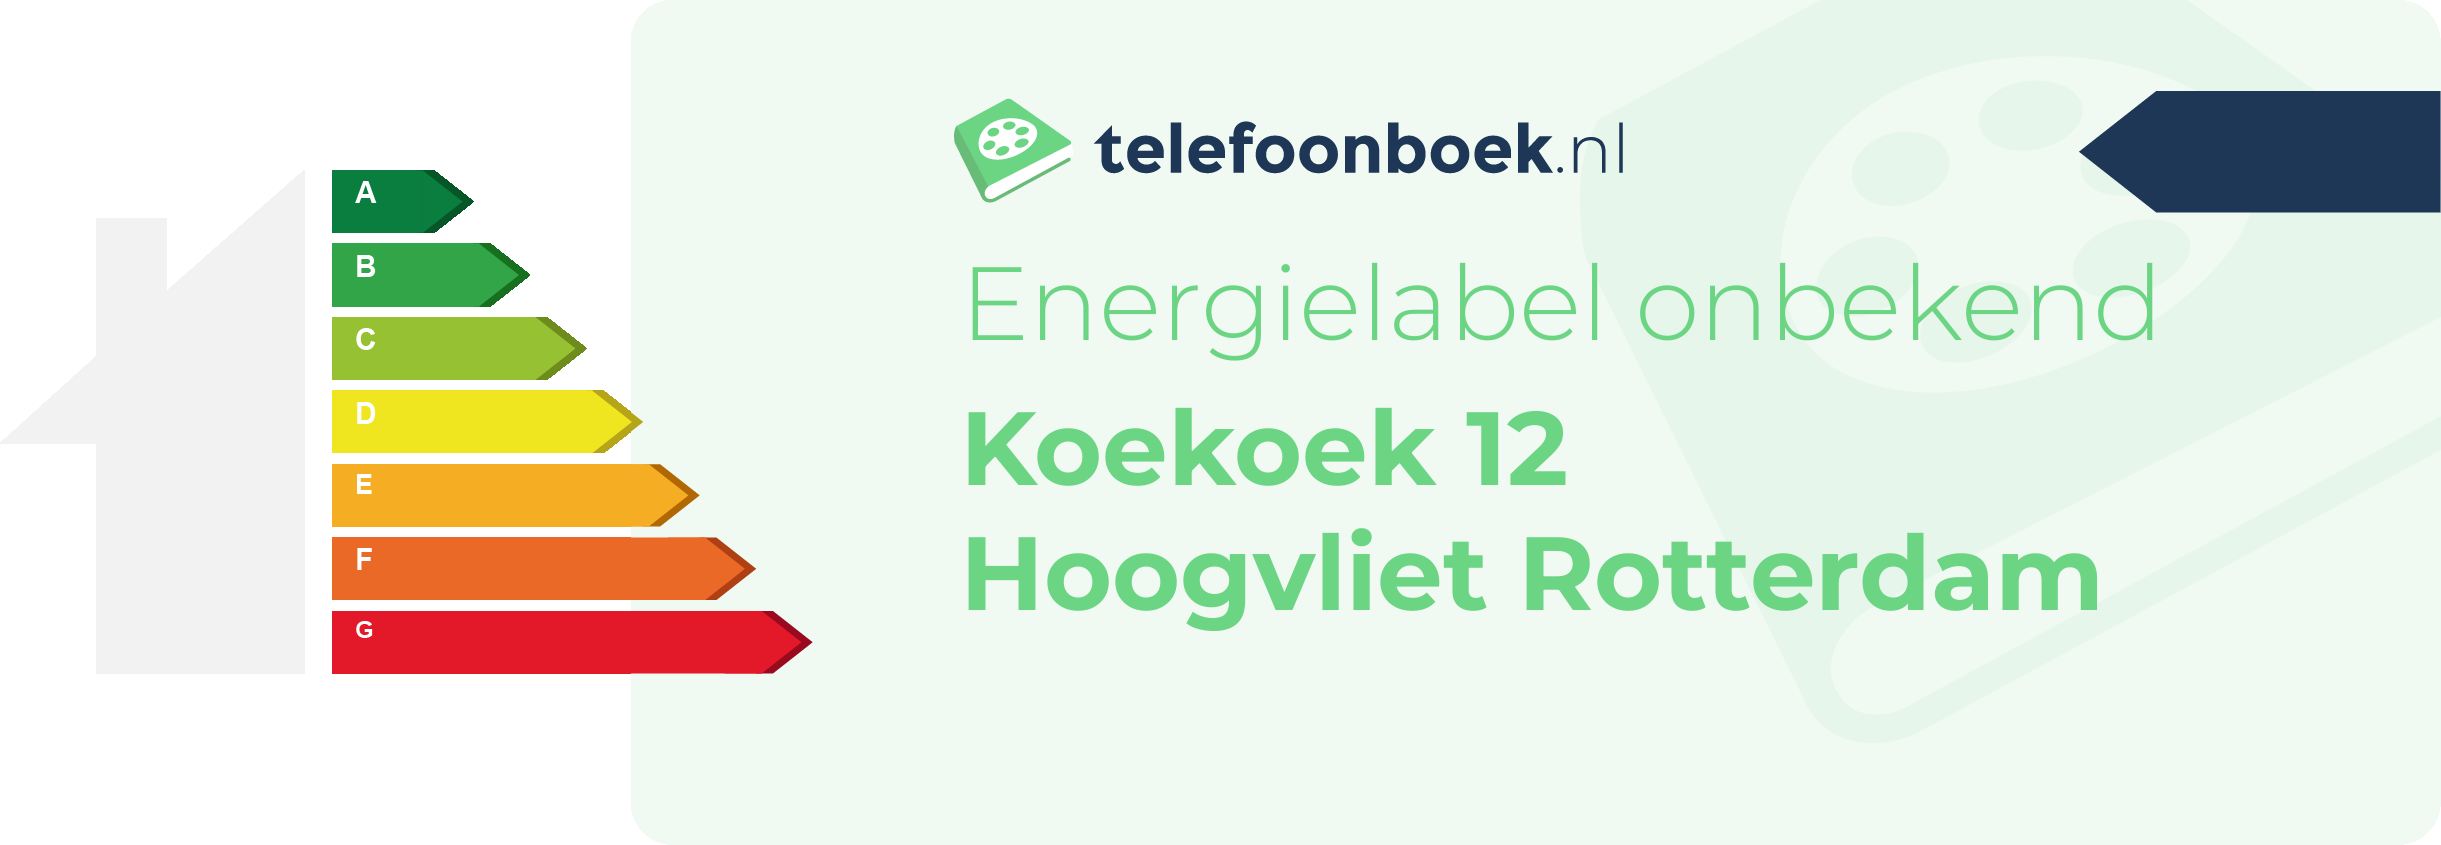 Energielabel Koekoek 12 Hoogvliet Rotterdam